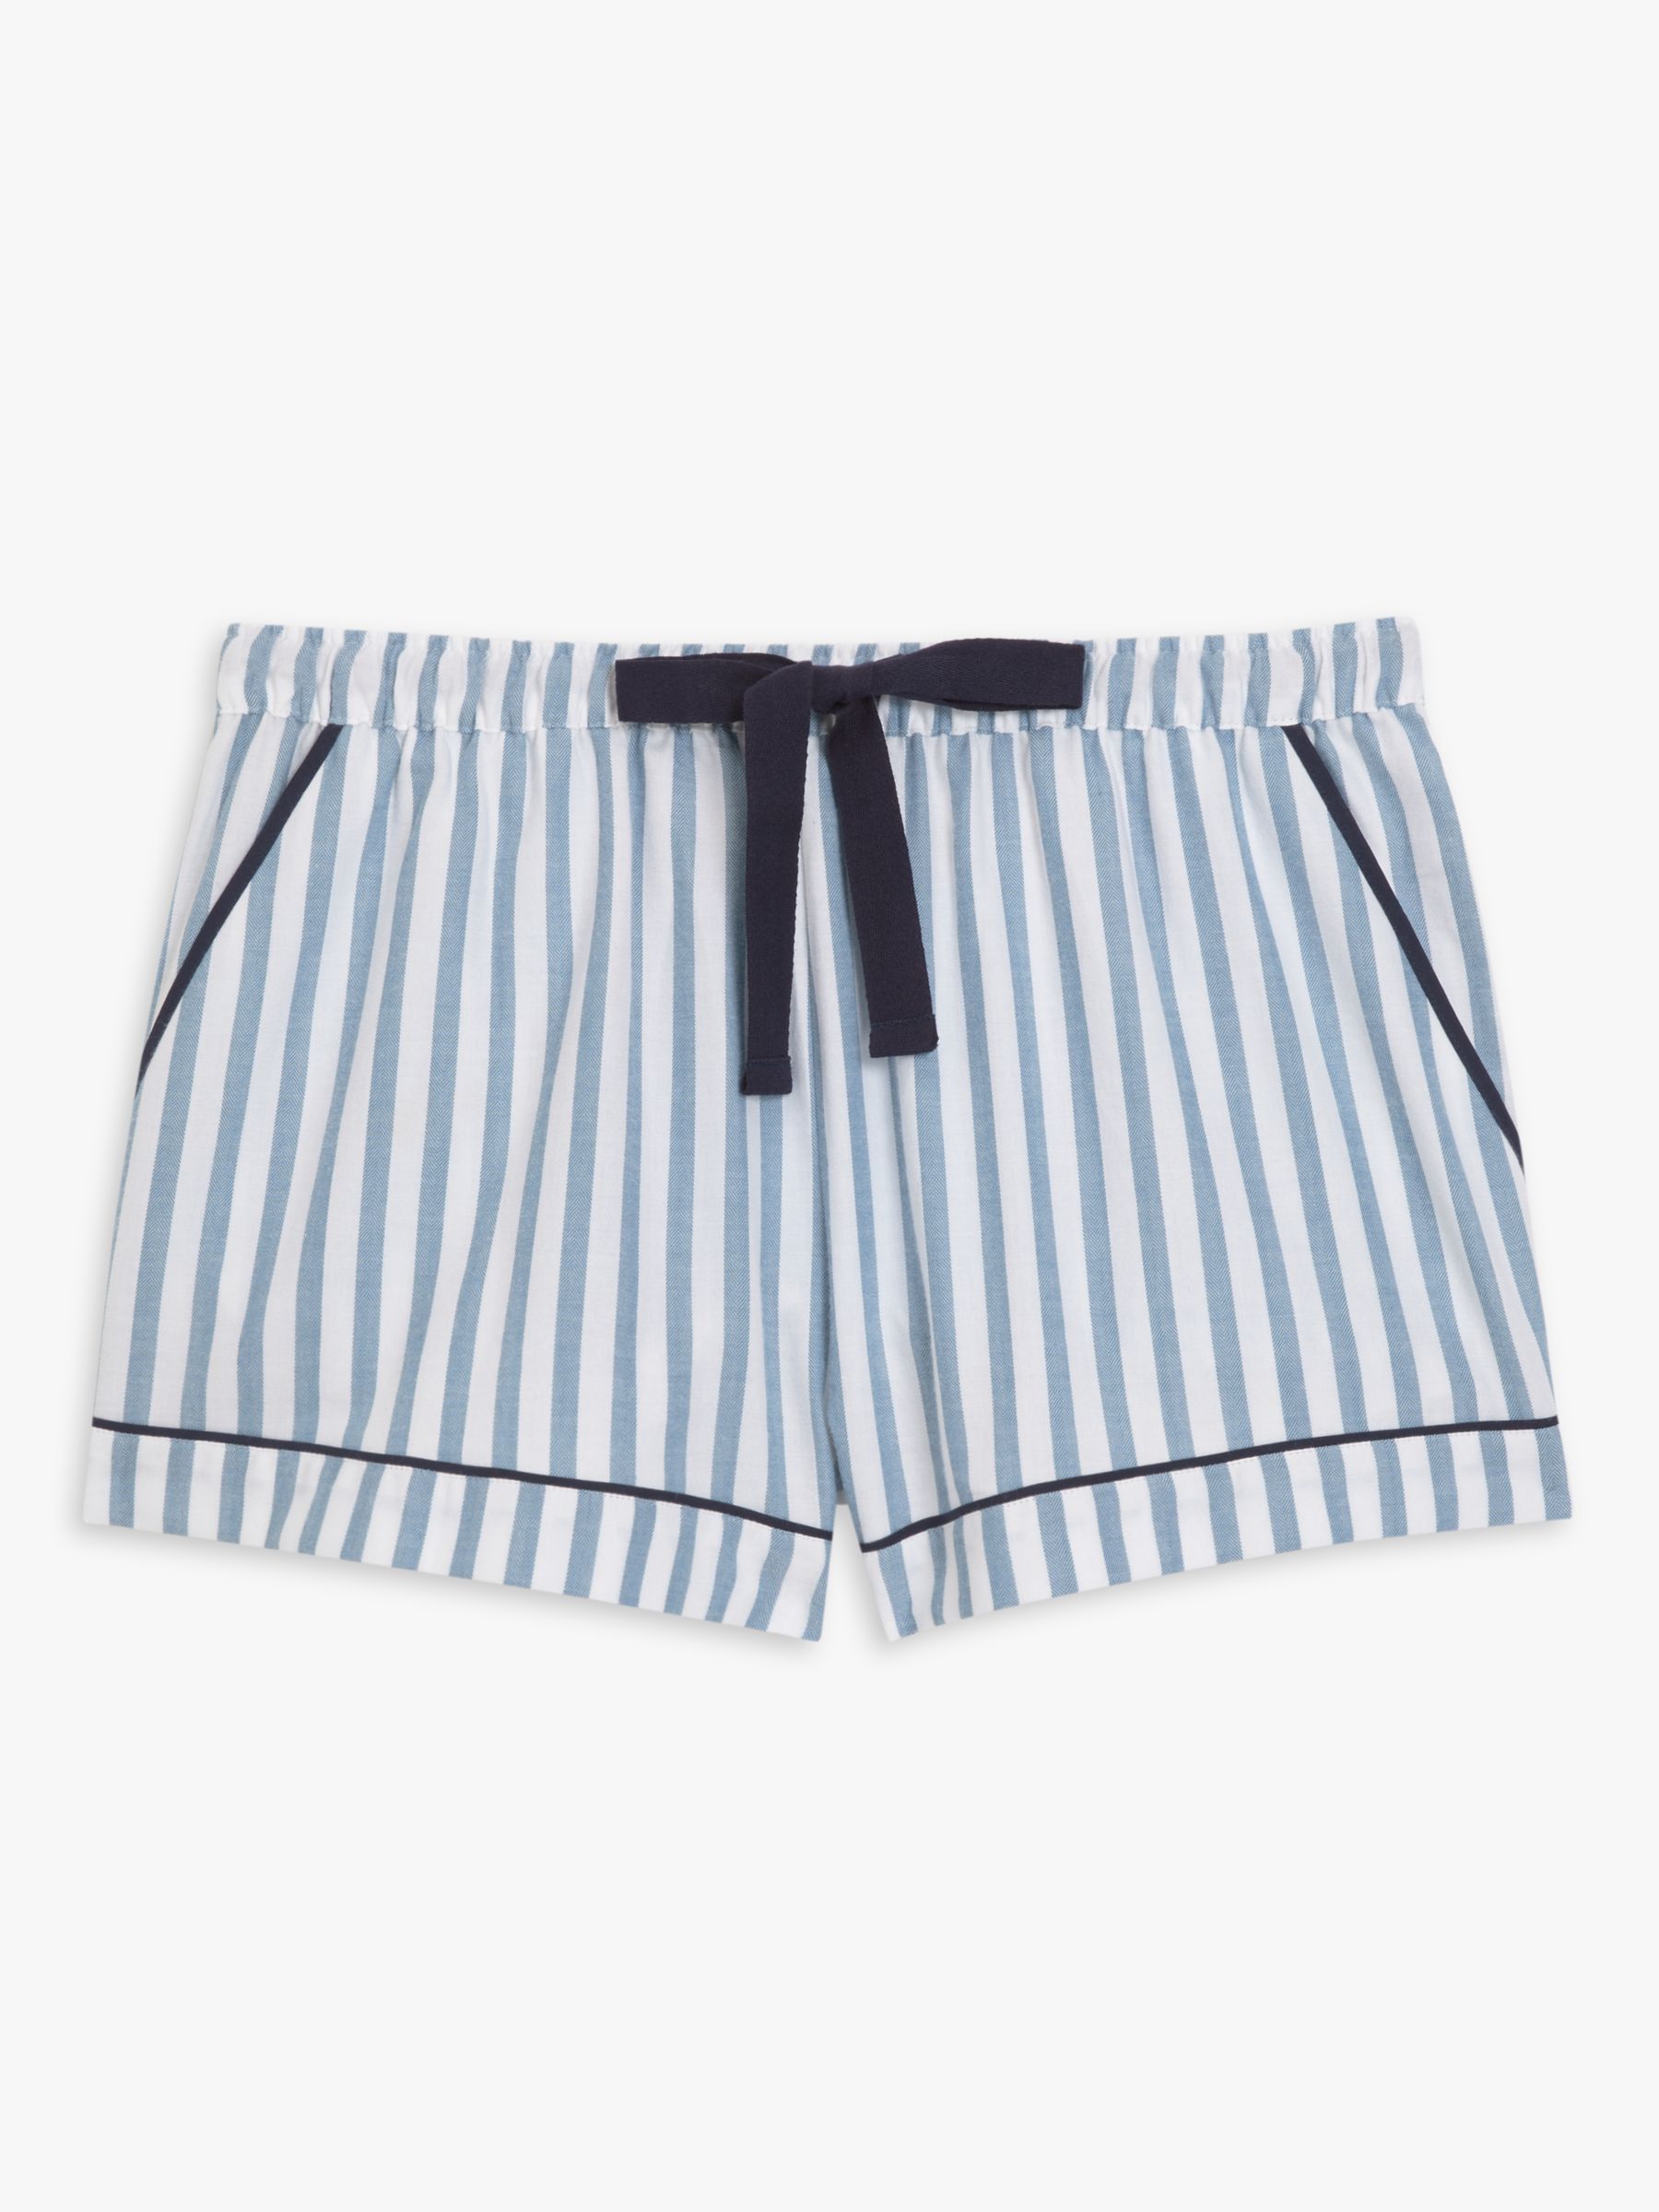 Buy John Lewis Luna Stripe Pyjama Shorts, White/Blue Online at johnlewis.com